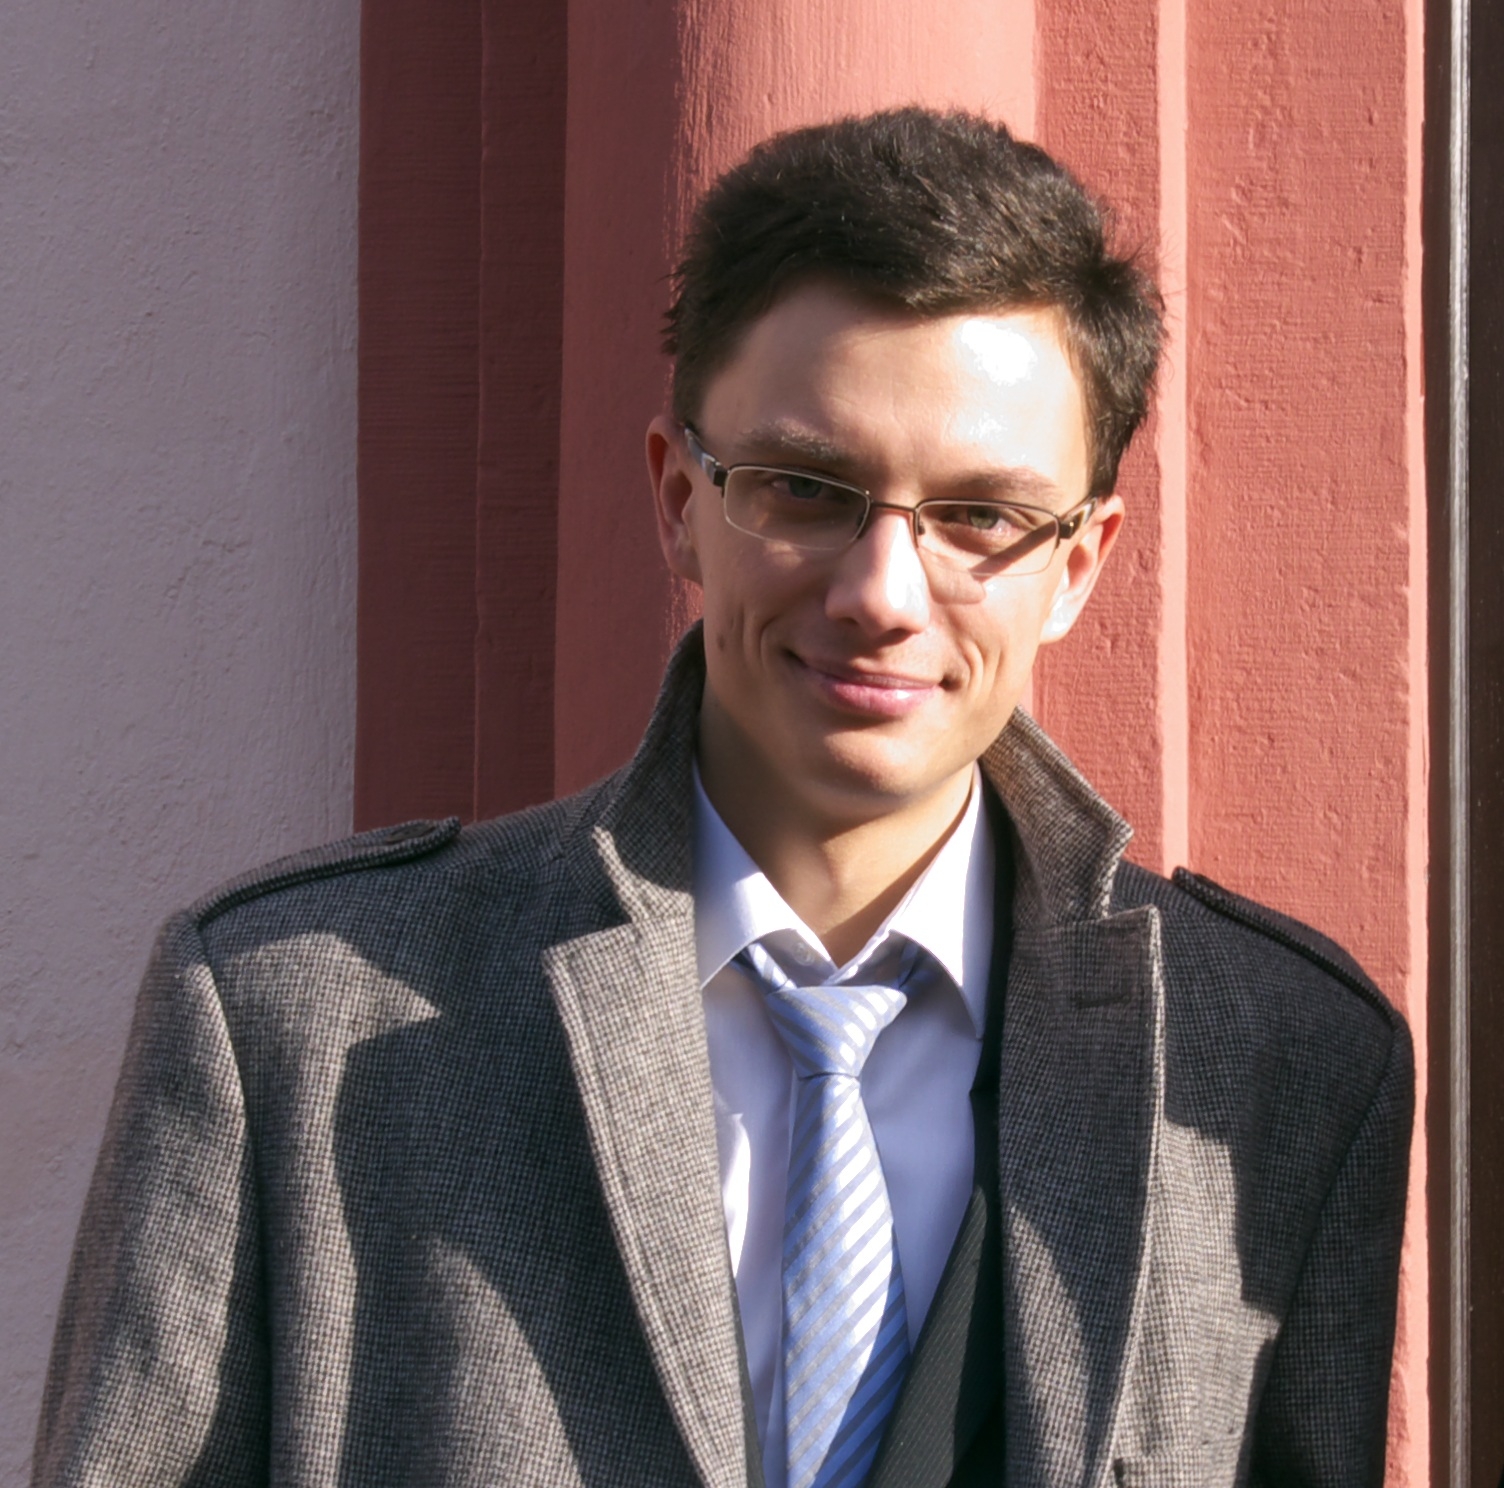 Kirill Monakhov, Burgen Scholar 2011